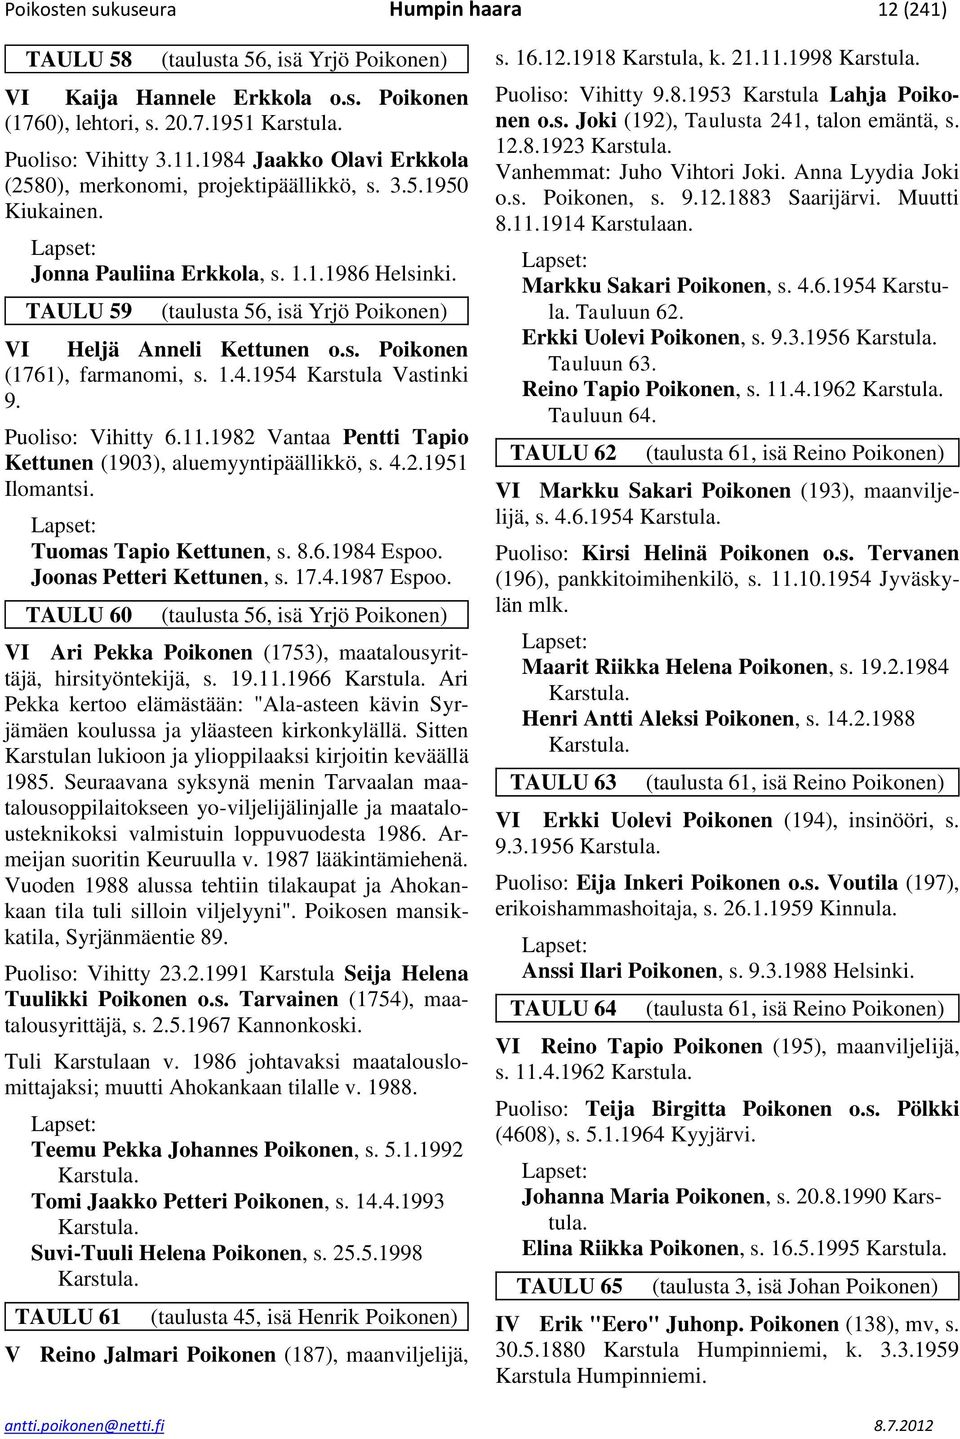 TAULU 59 (taulusta 56, isä Yrjö Poikonen) VI Heljä Anneli Kettunen o.s. Poikonen (1761), farmanomi, s. 1.4.1954 Karstula Vastinki 9. Puoliso: Vihitty 6.11.